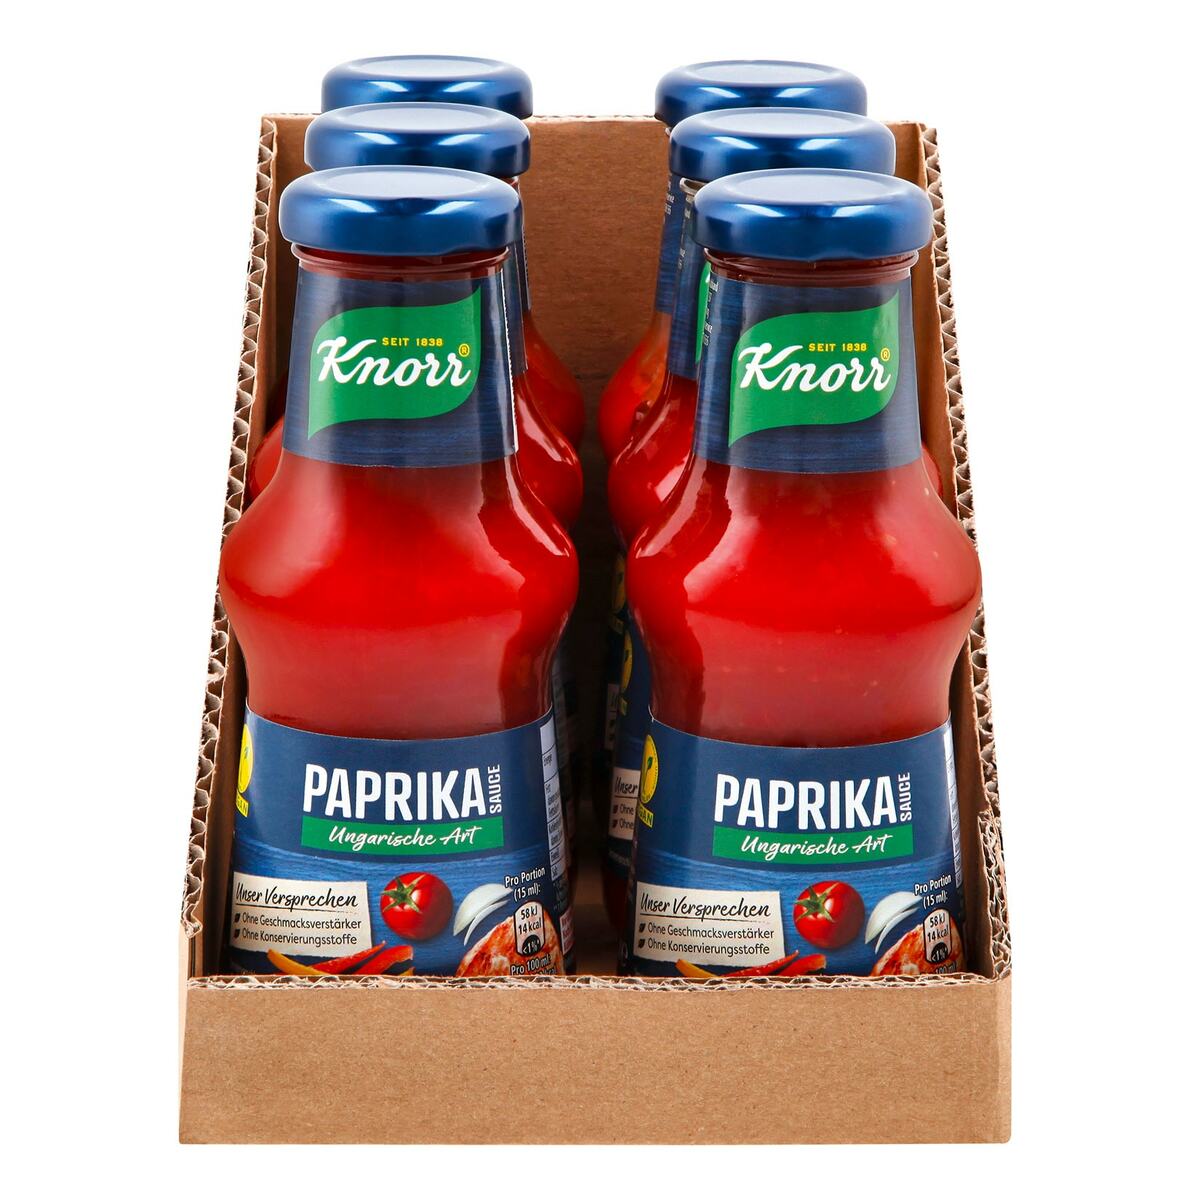 Knorr Paprikasauce ungarische Art 250 ml, 6er Pack von Netto Marken ...